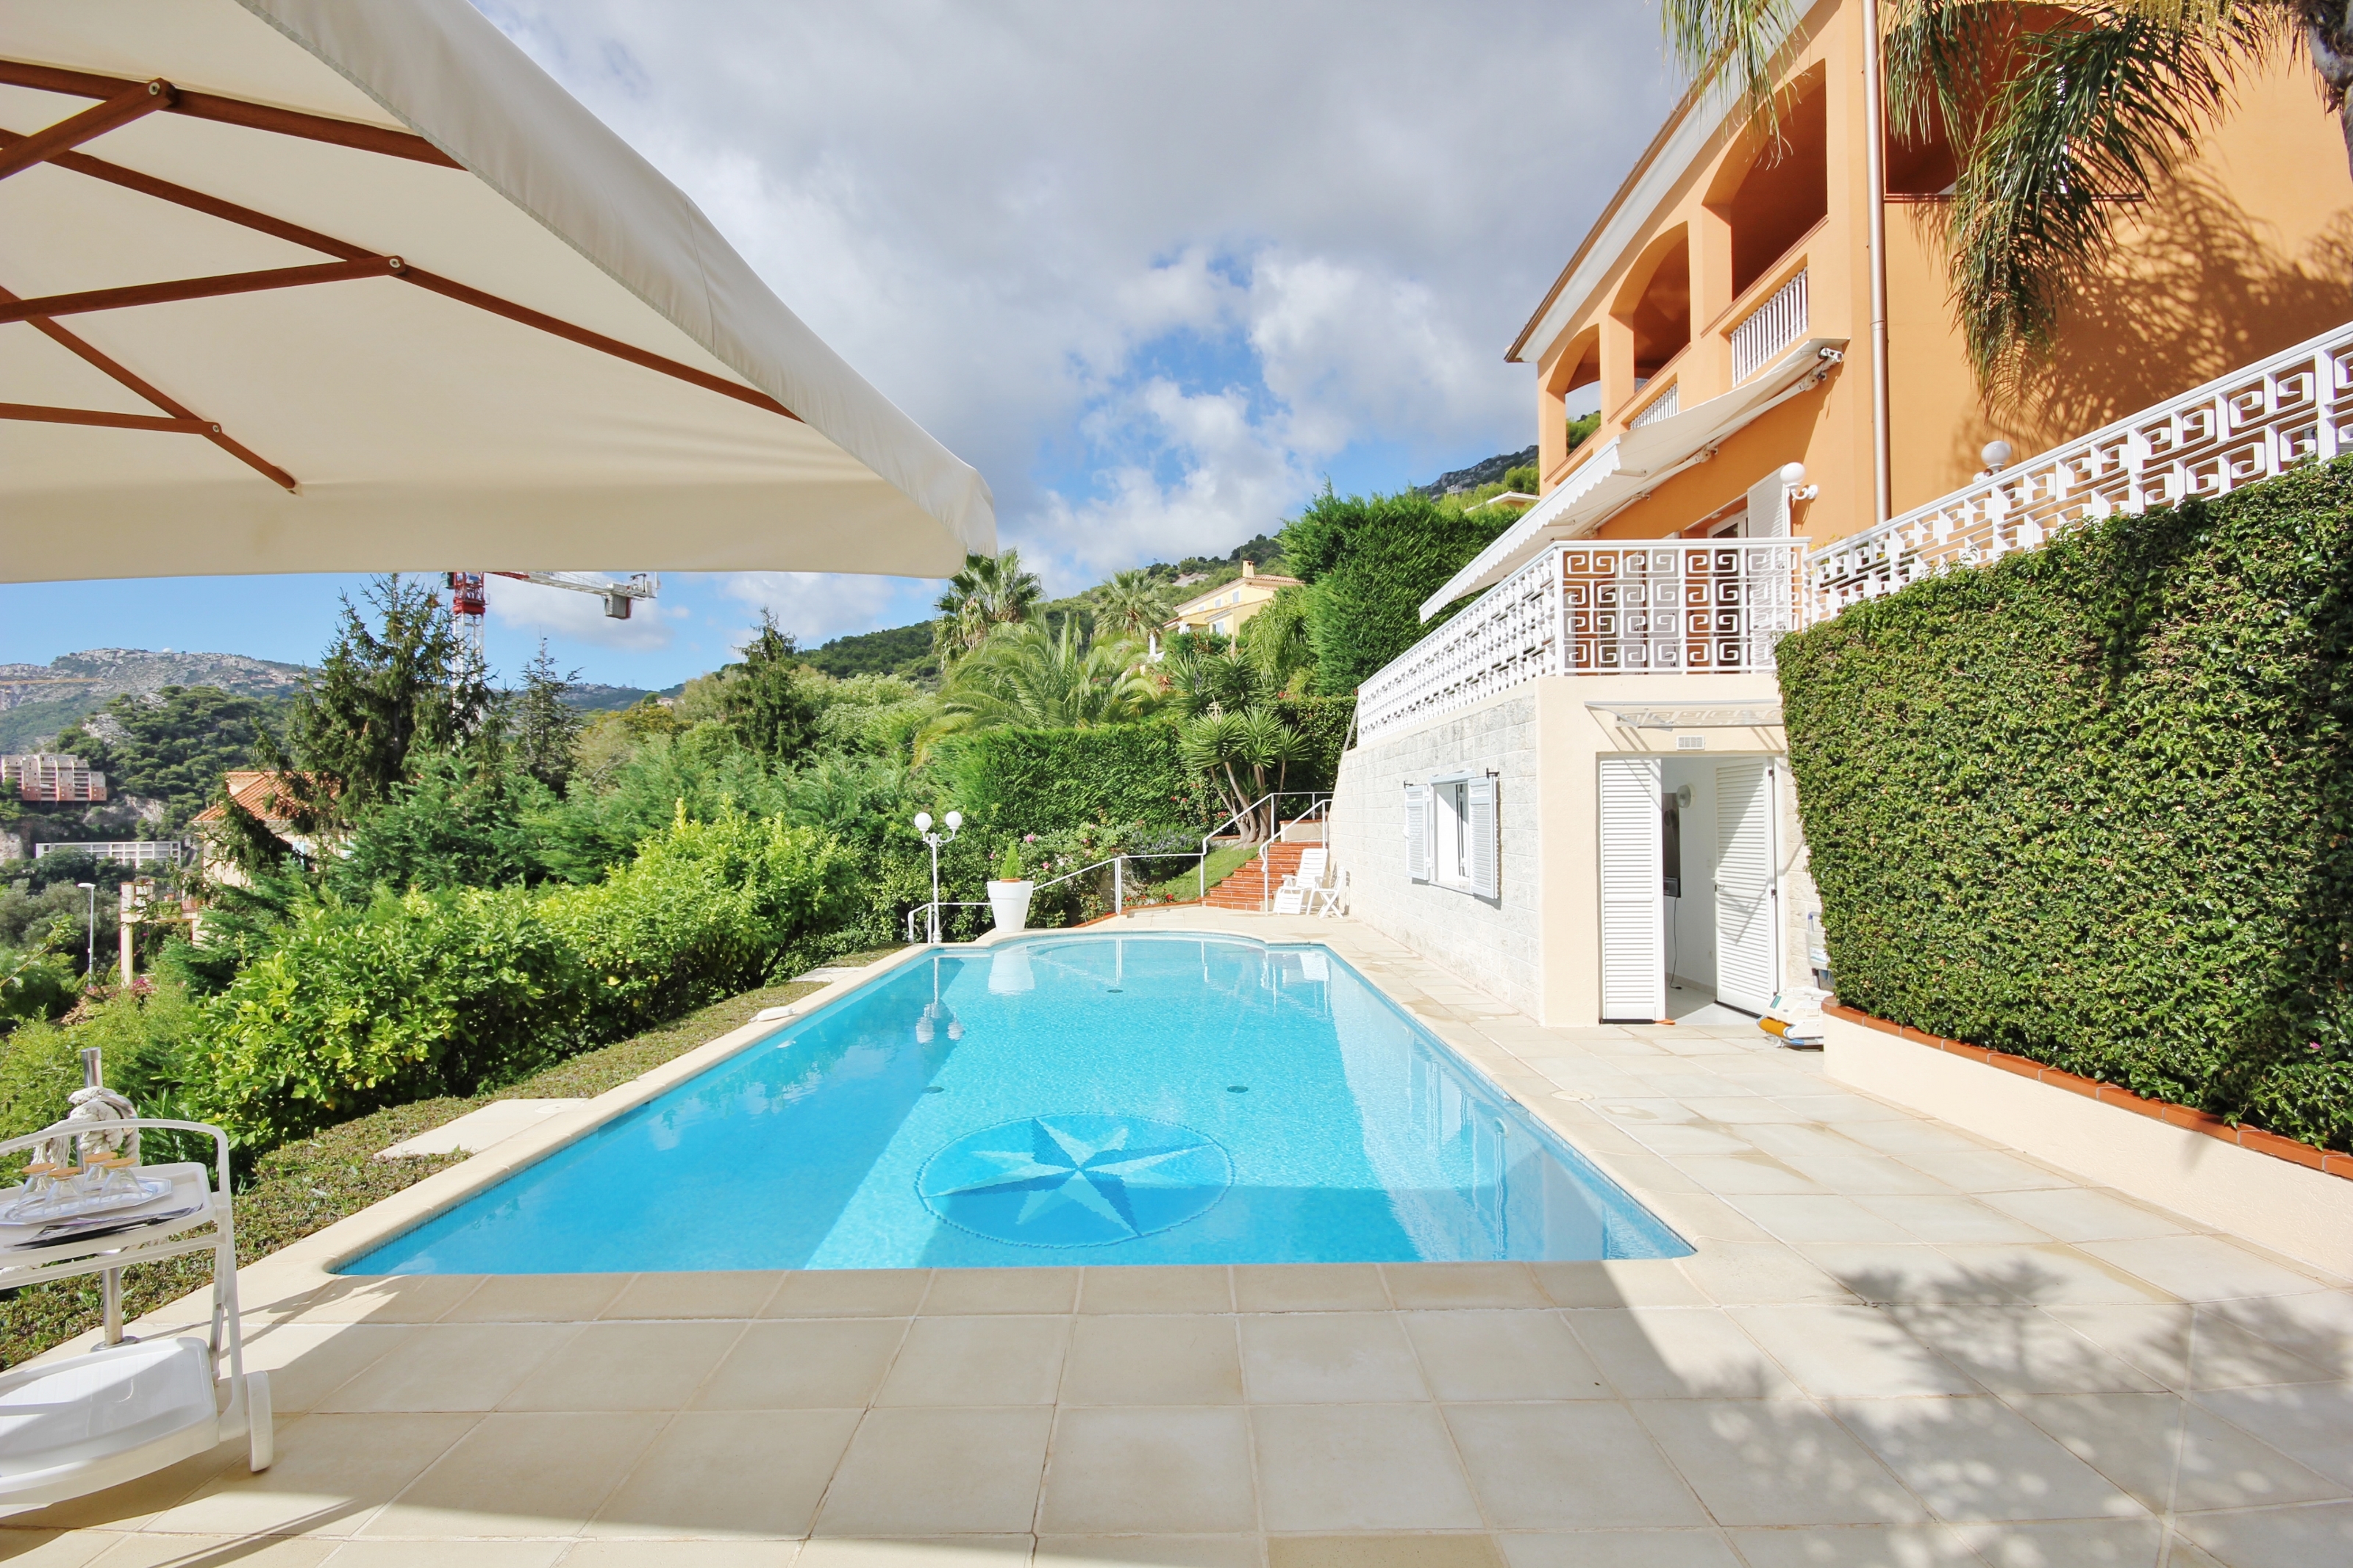 Acheter une belle villa à Beausoleil caressée par la brise de Monaco